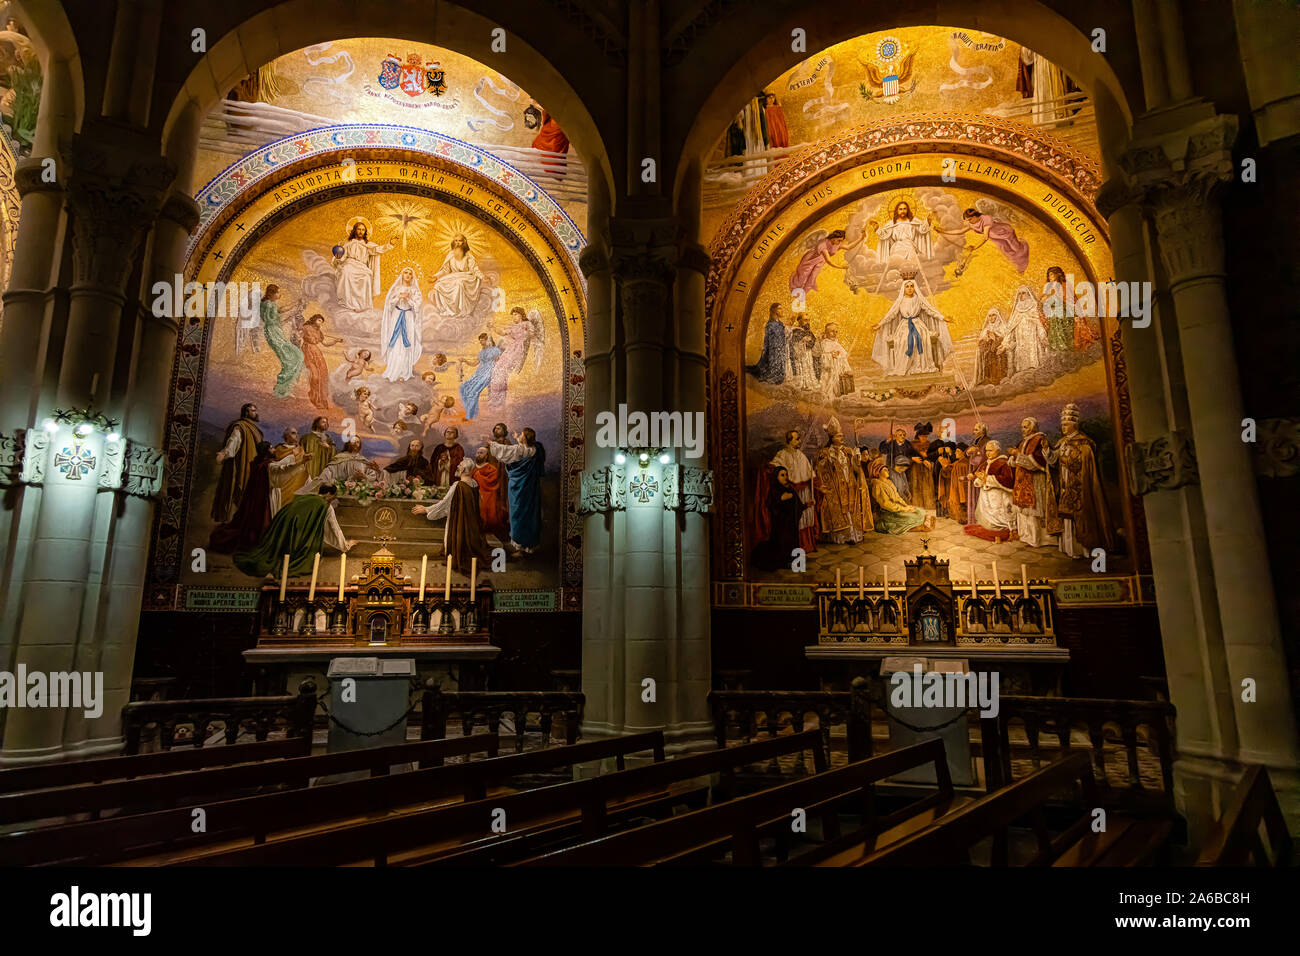 LOURDES, Francia - Junio 15, 2019: la Capilla del Rosario en la Basílica de Lourdes mostrando murales cristiana Foto de stock